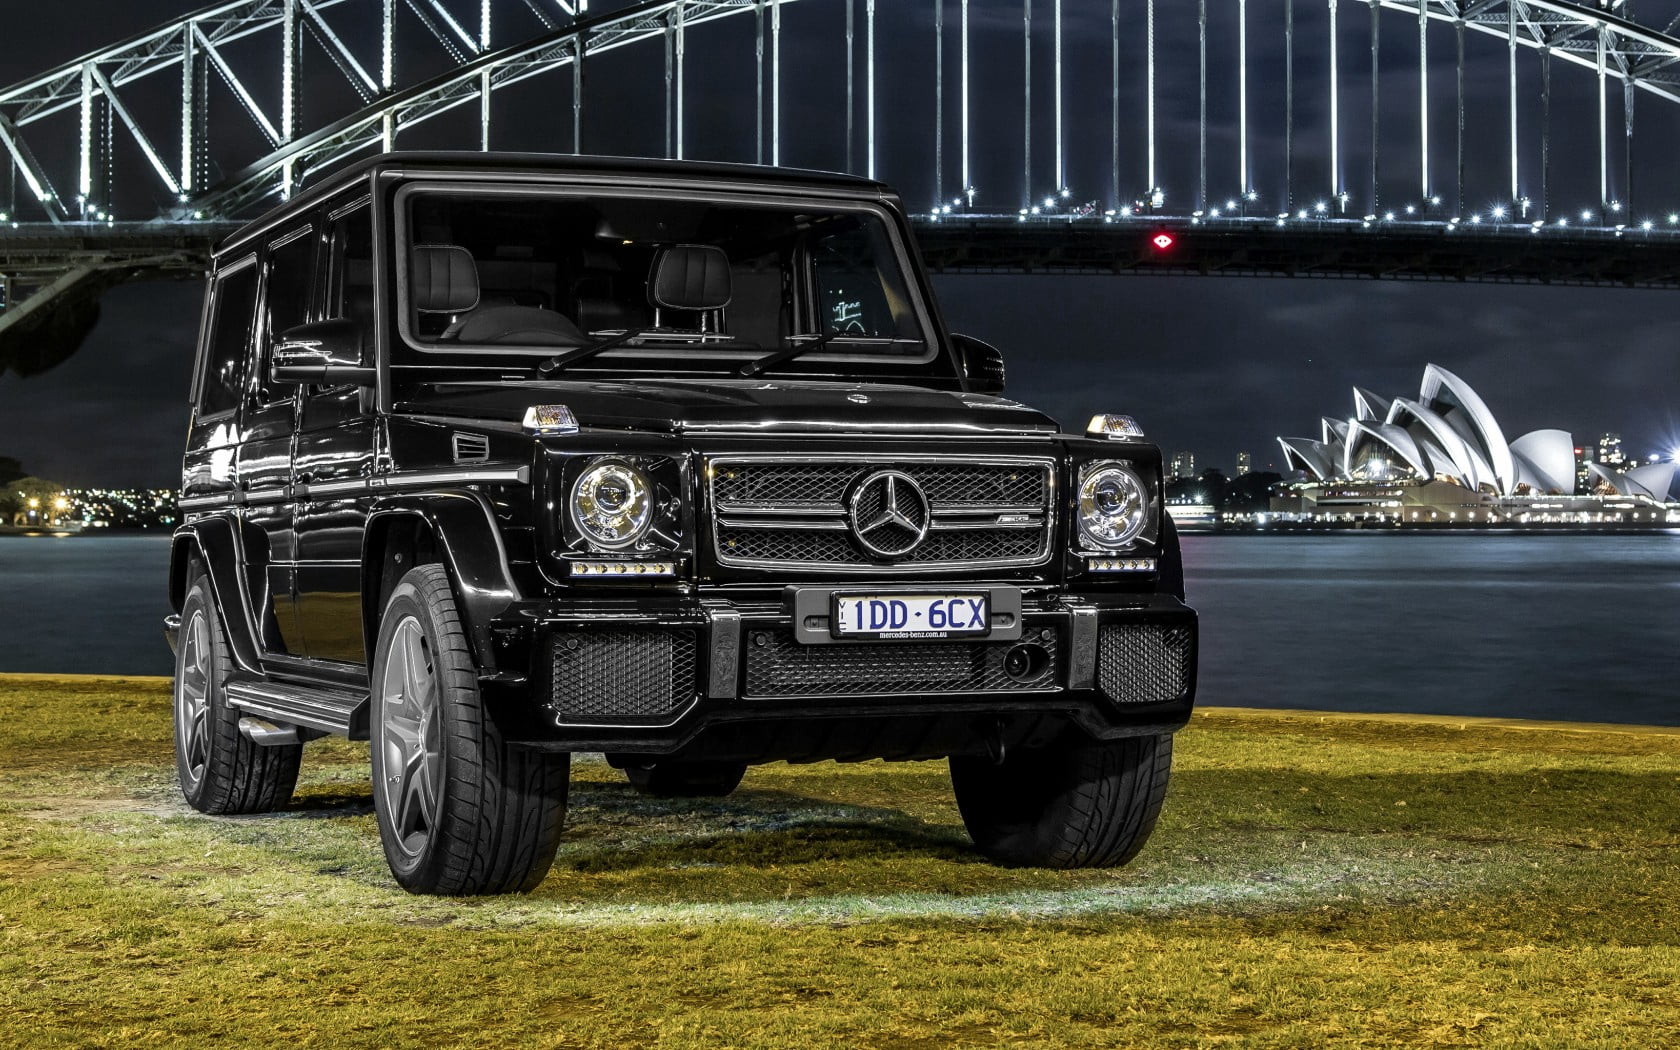 black Mercedes-Benz SUV, amg, g-class, w463, car, transportation